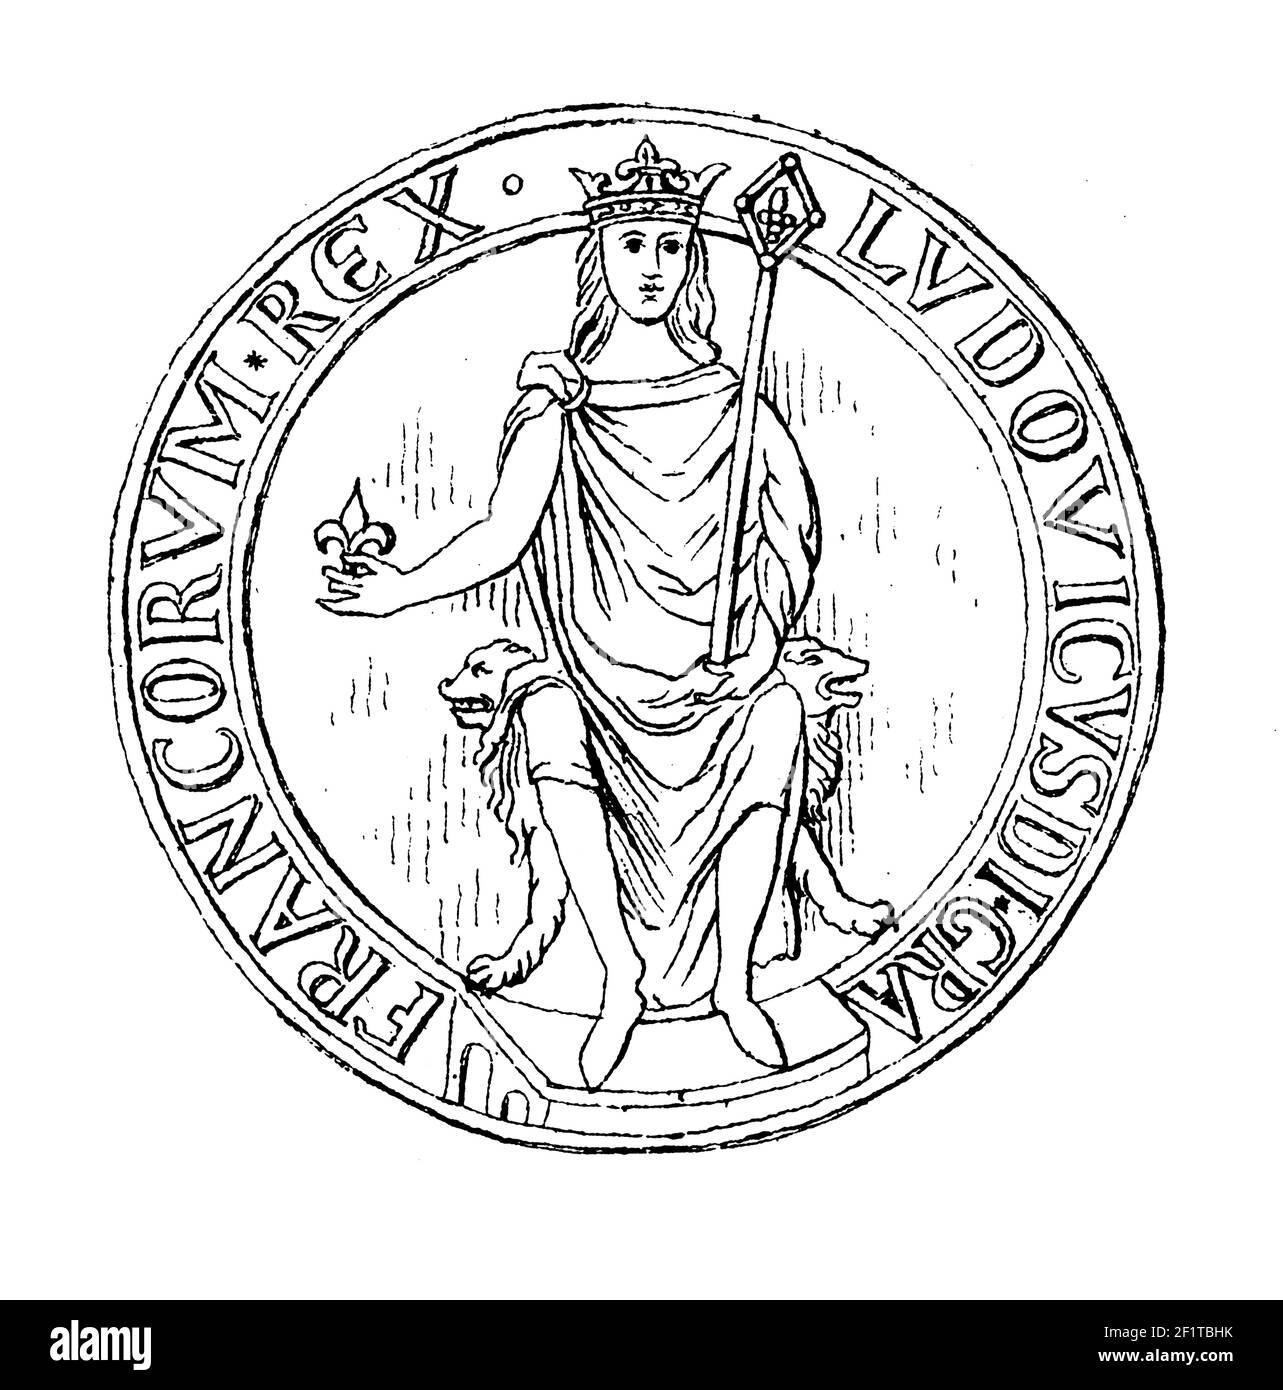 Incisione ottocentesca di un ritratto di Luigi VIII il Leone, Re di Francia e Conte d'Artois. Luigi VII nacque il 5 settembre 1187 a Parigi, fra Foto Stock